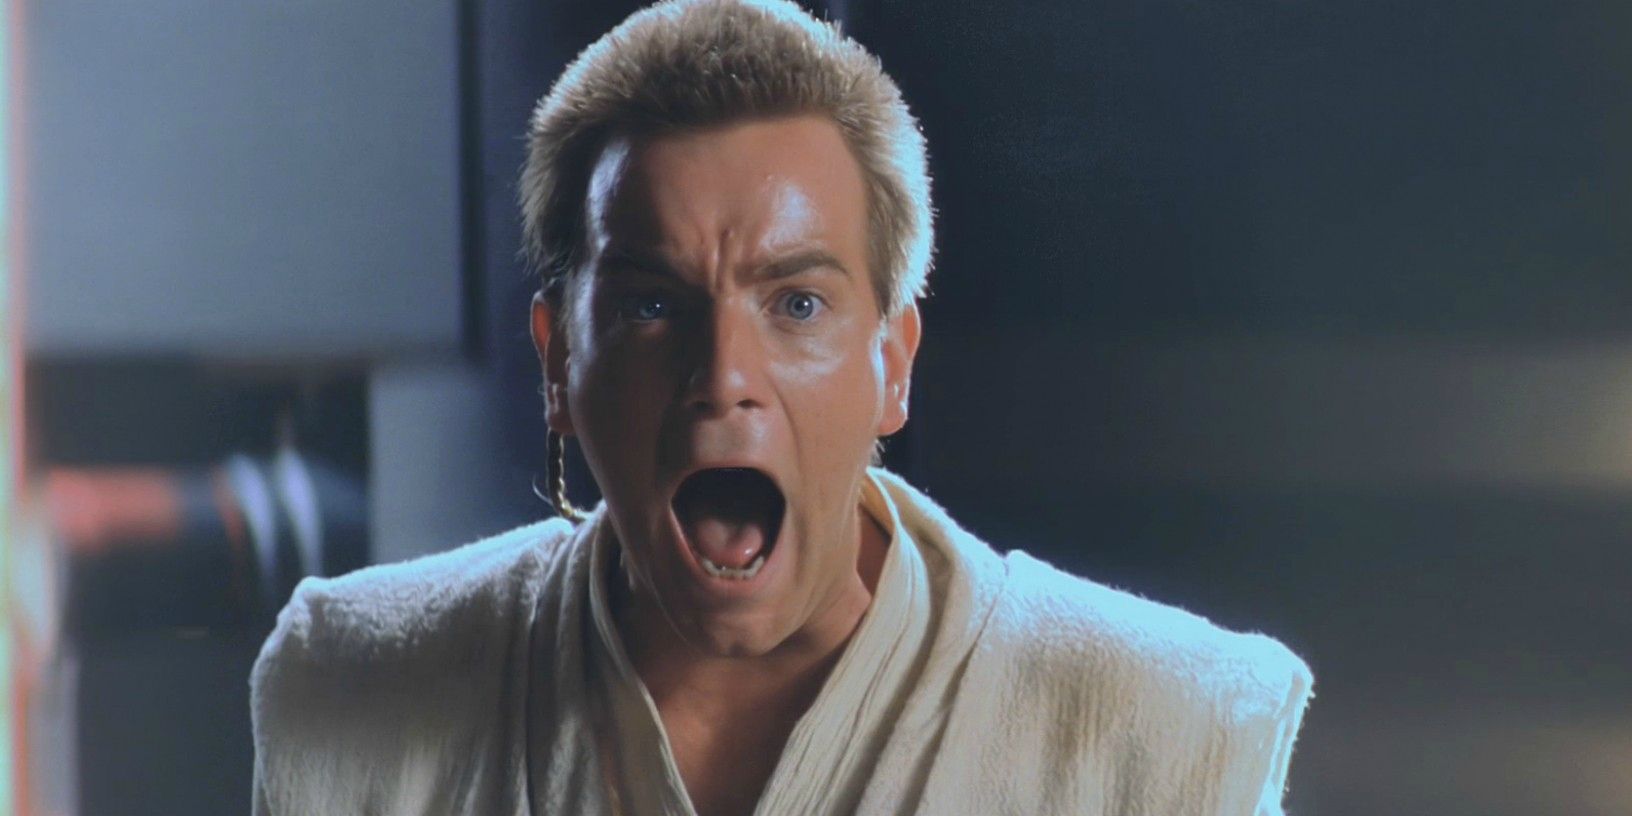 Ewan McGregor as Obi-Wan Kenobi in The Phantom Menace